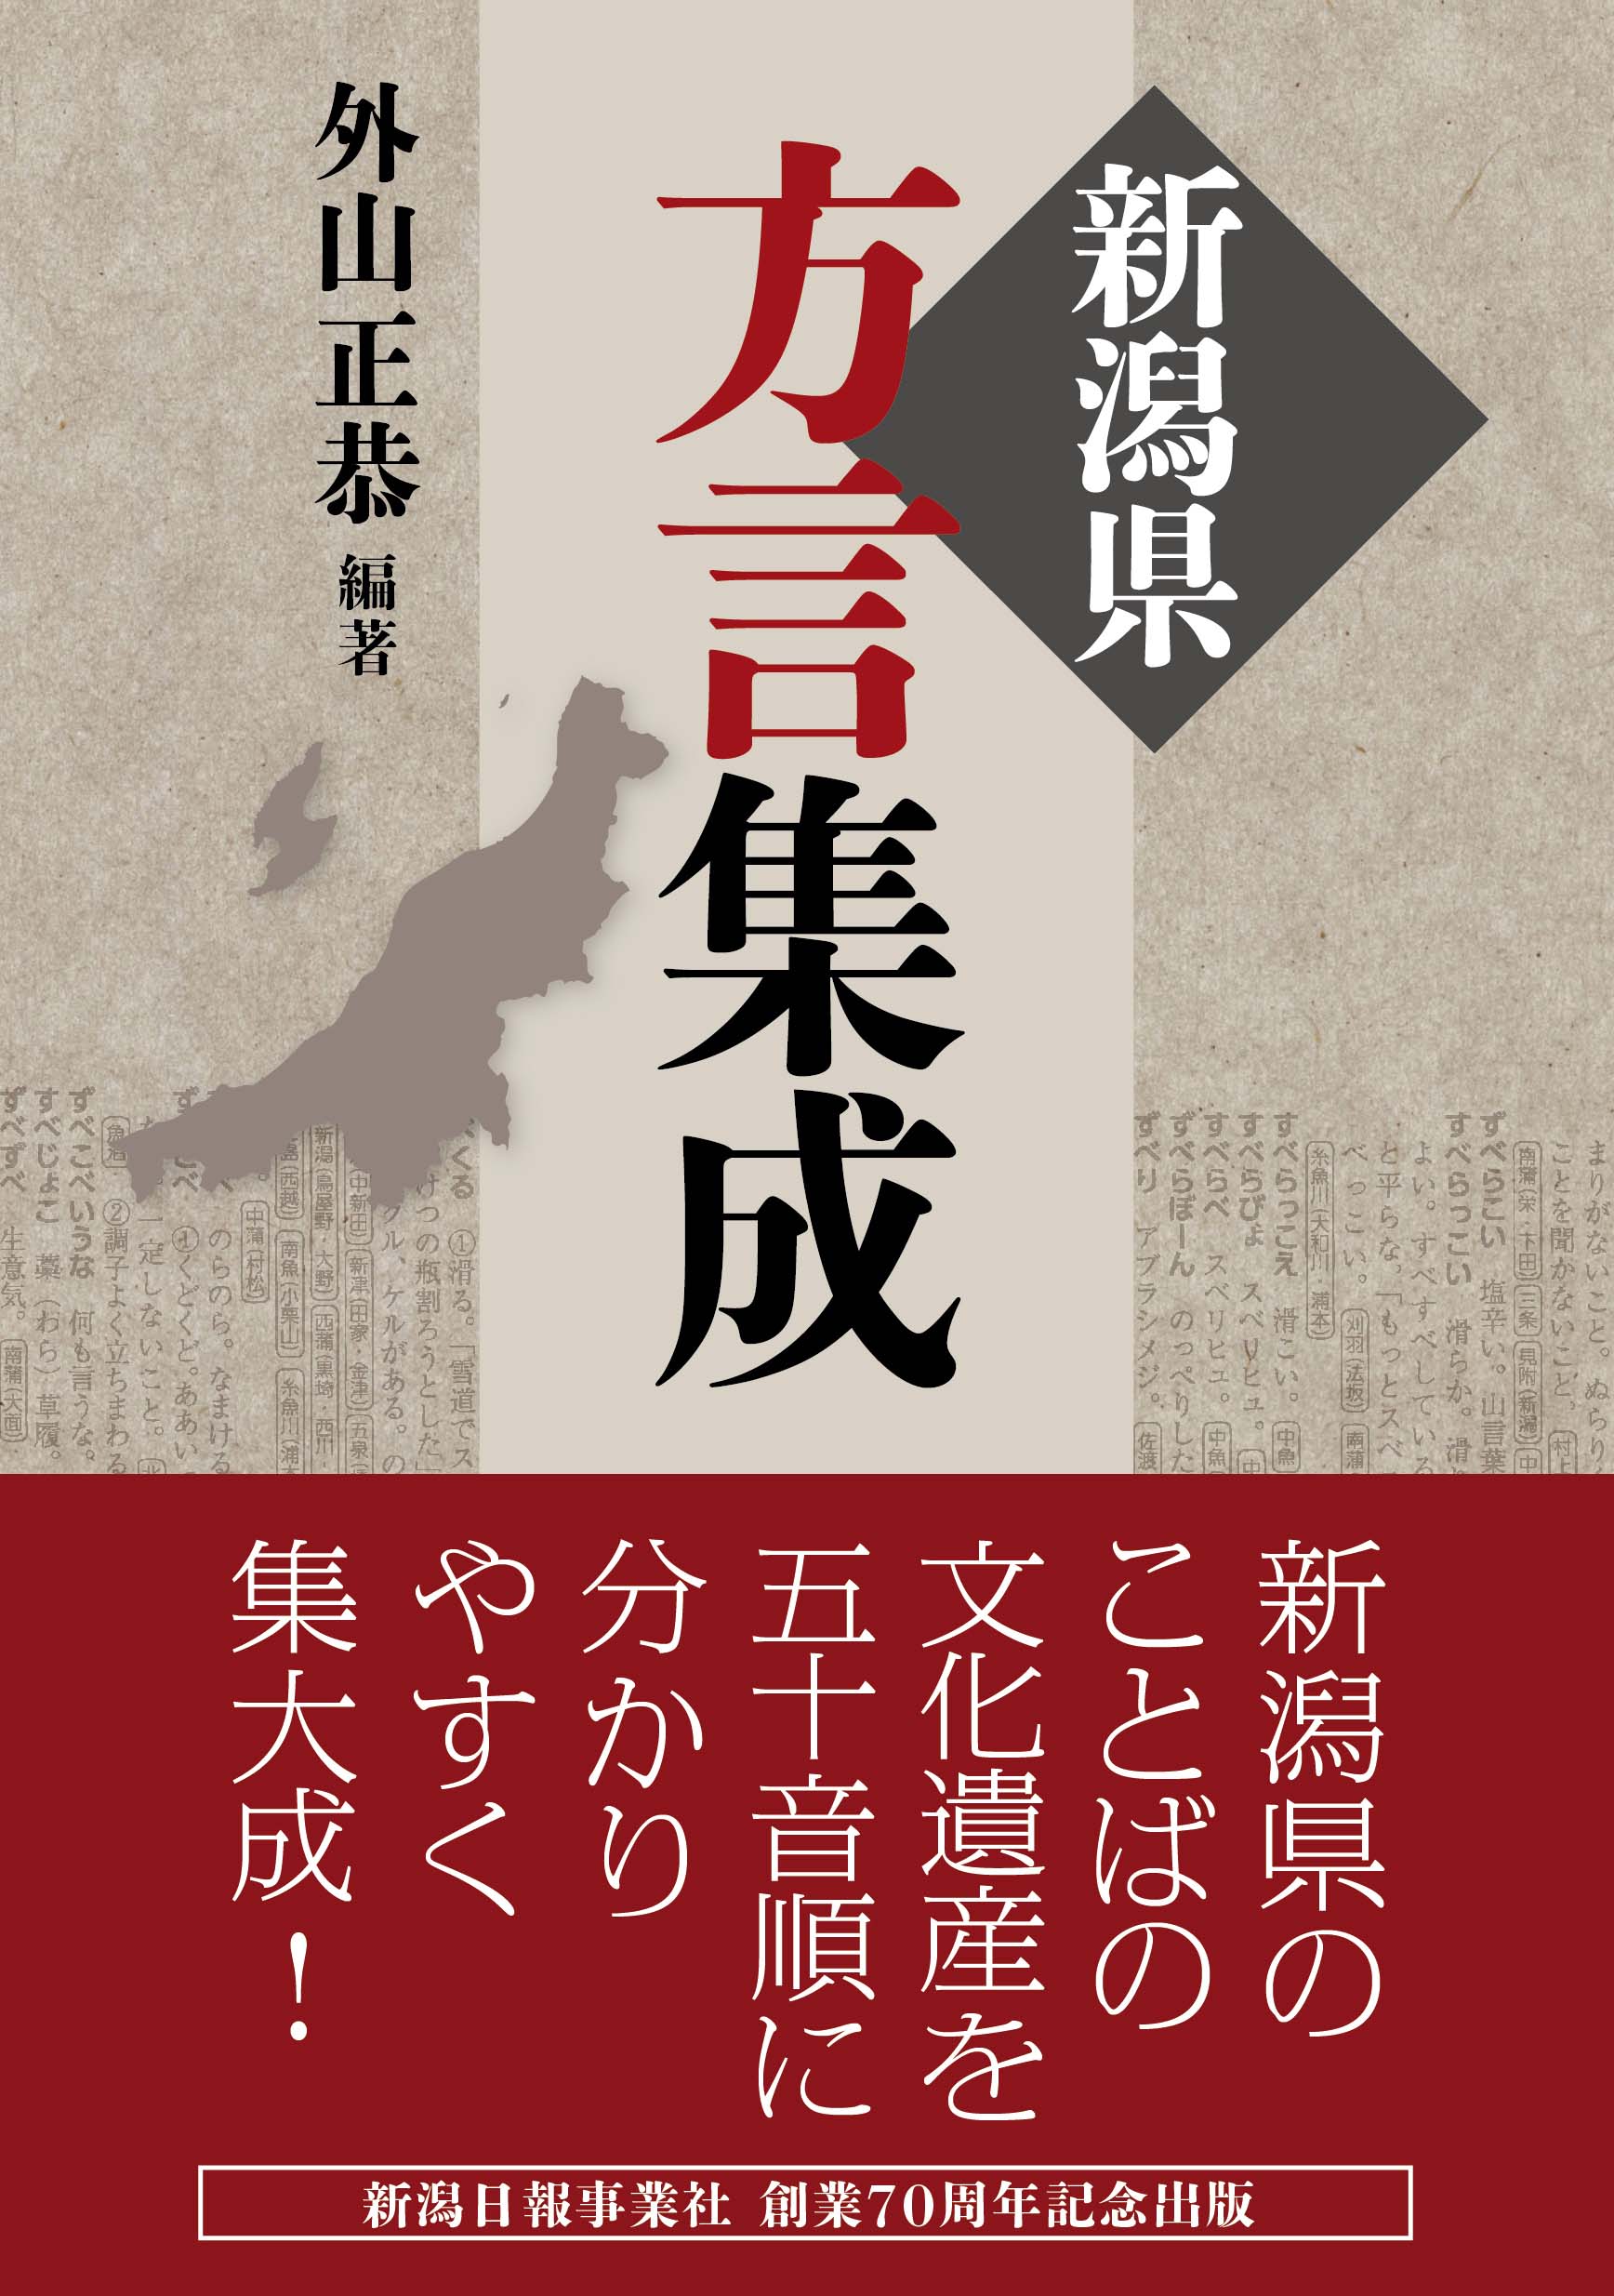 新潟日報事業社の本 Takahokari5241 新潟県方言集成 は 土の香 を改題して再発刊したものです 再刊にあたって若干語句の並べかえは行っていますが 基本的な内容は同じです Twitter